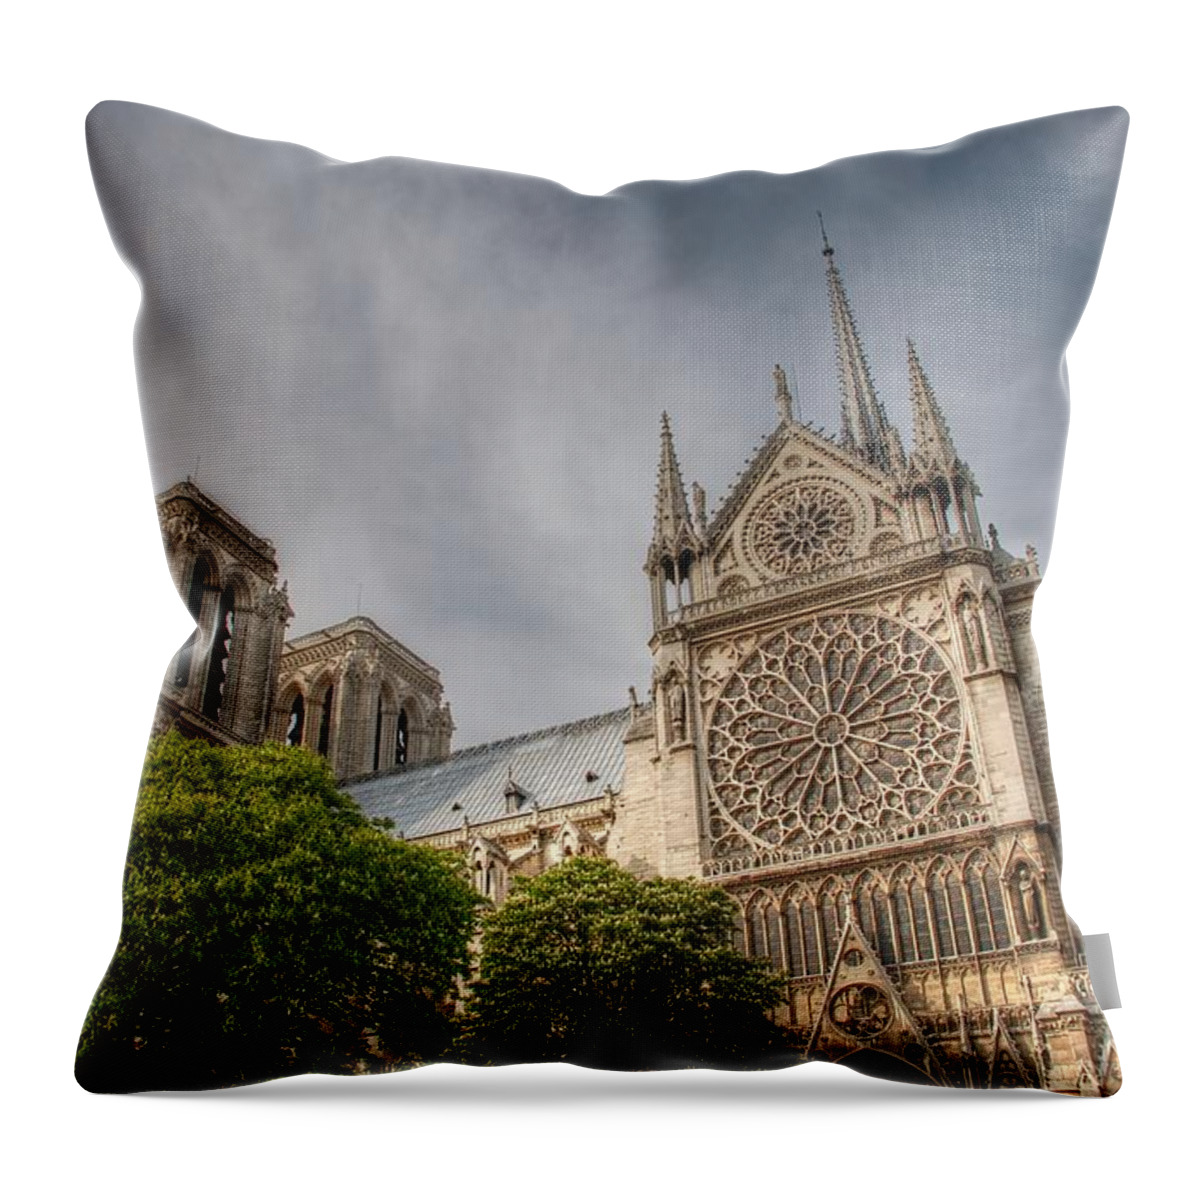 Notre Dame Throw Pillow featuring the photograph Notre Dame de Paris by Jennifer Ancker